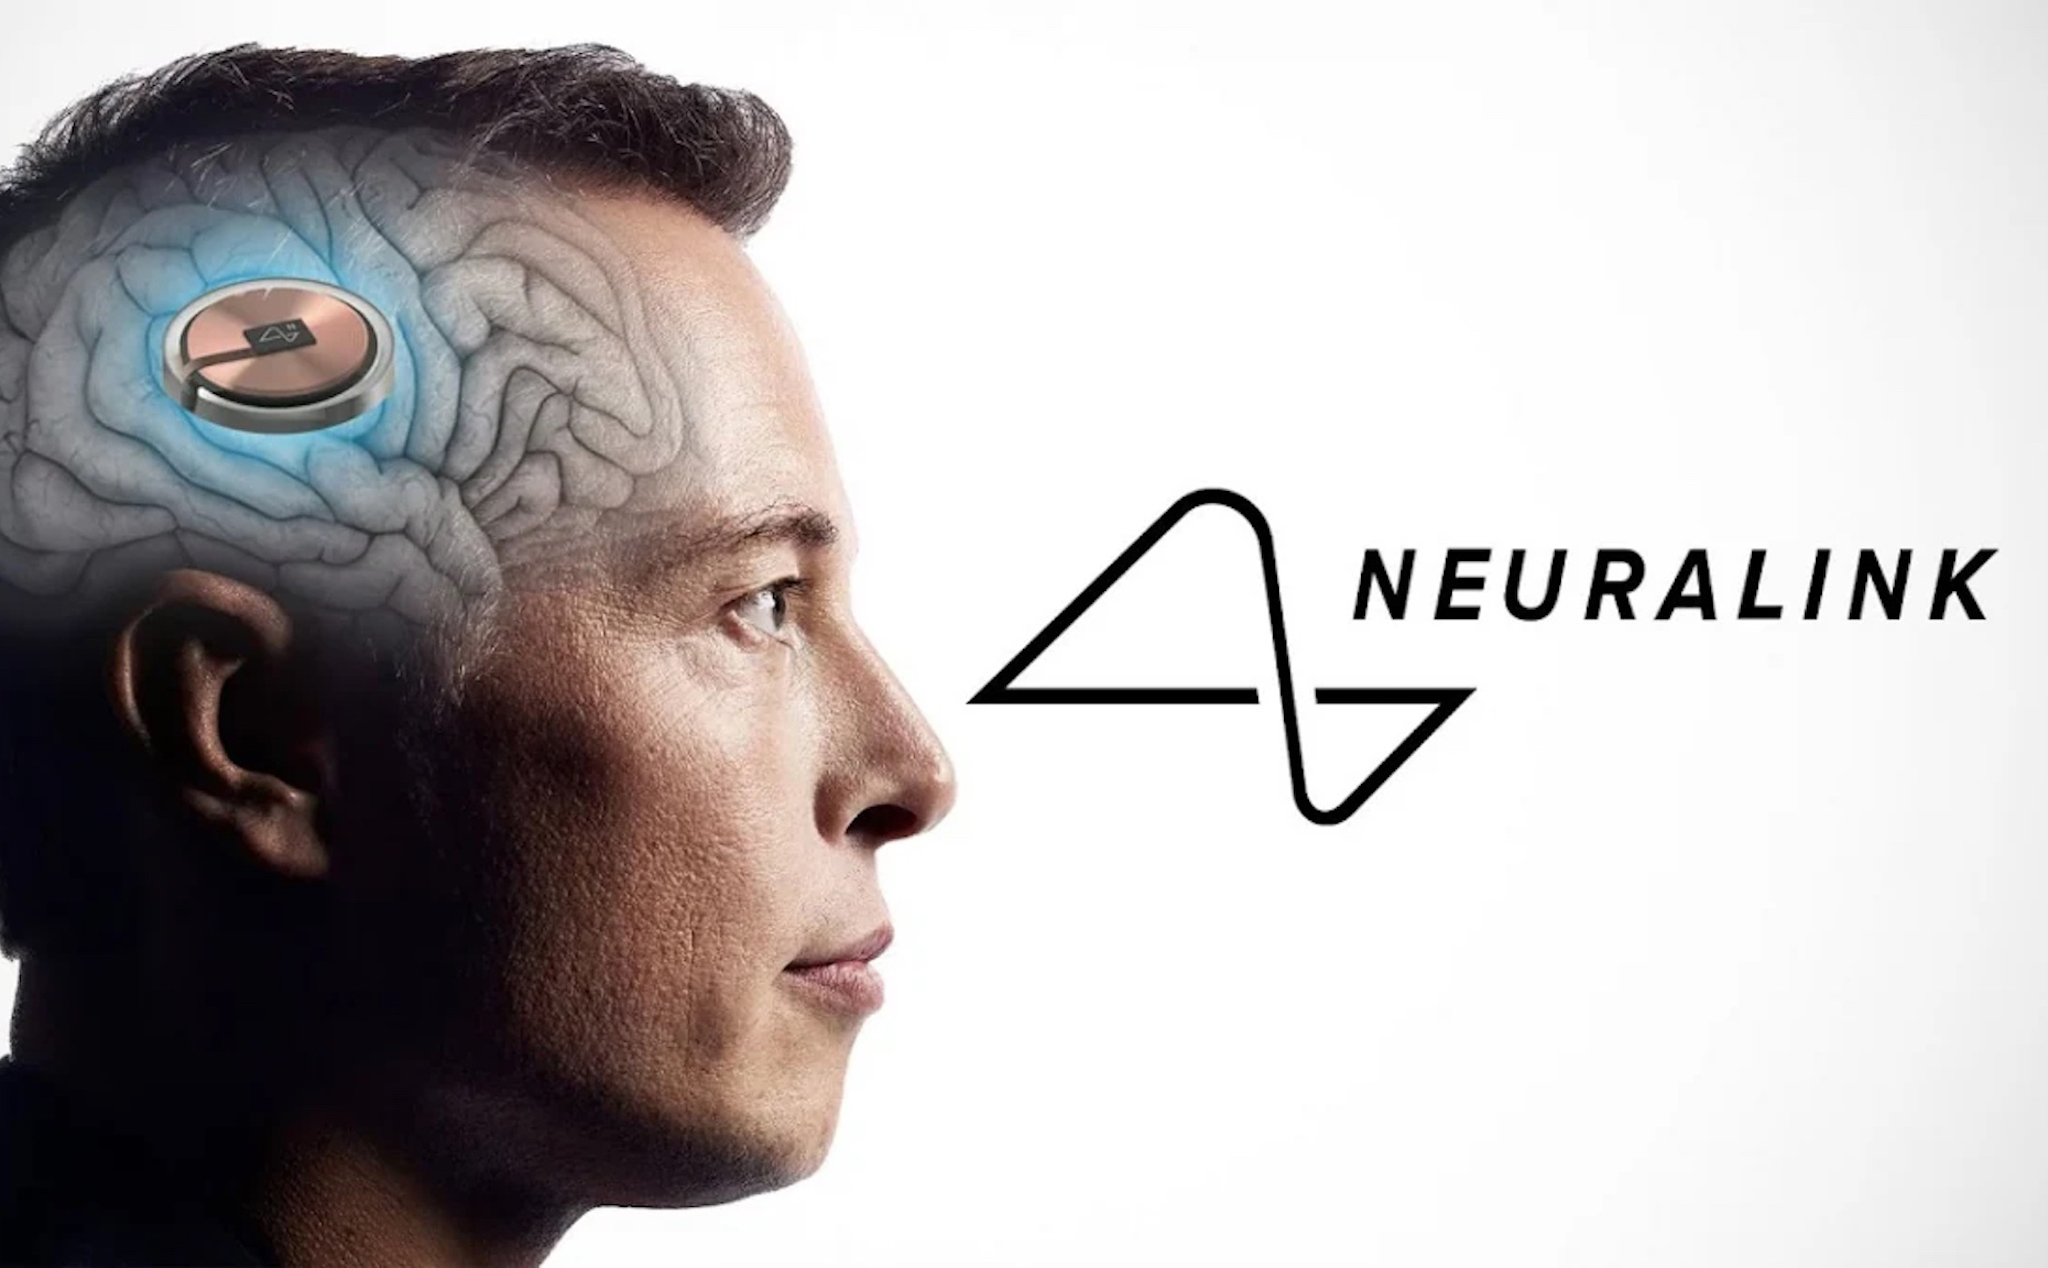 Công ty cấy ghép não của Elon Musk - Neuralink đã được chấp thuận nghiên cứu trên người